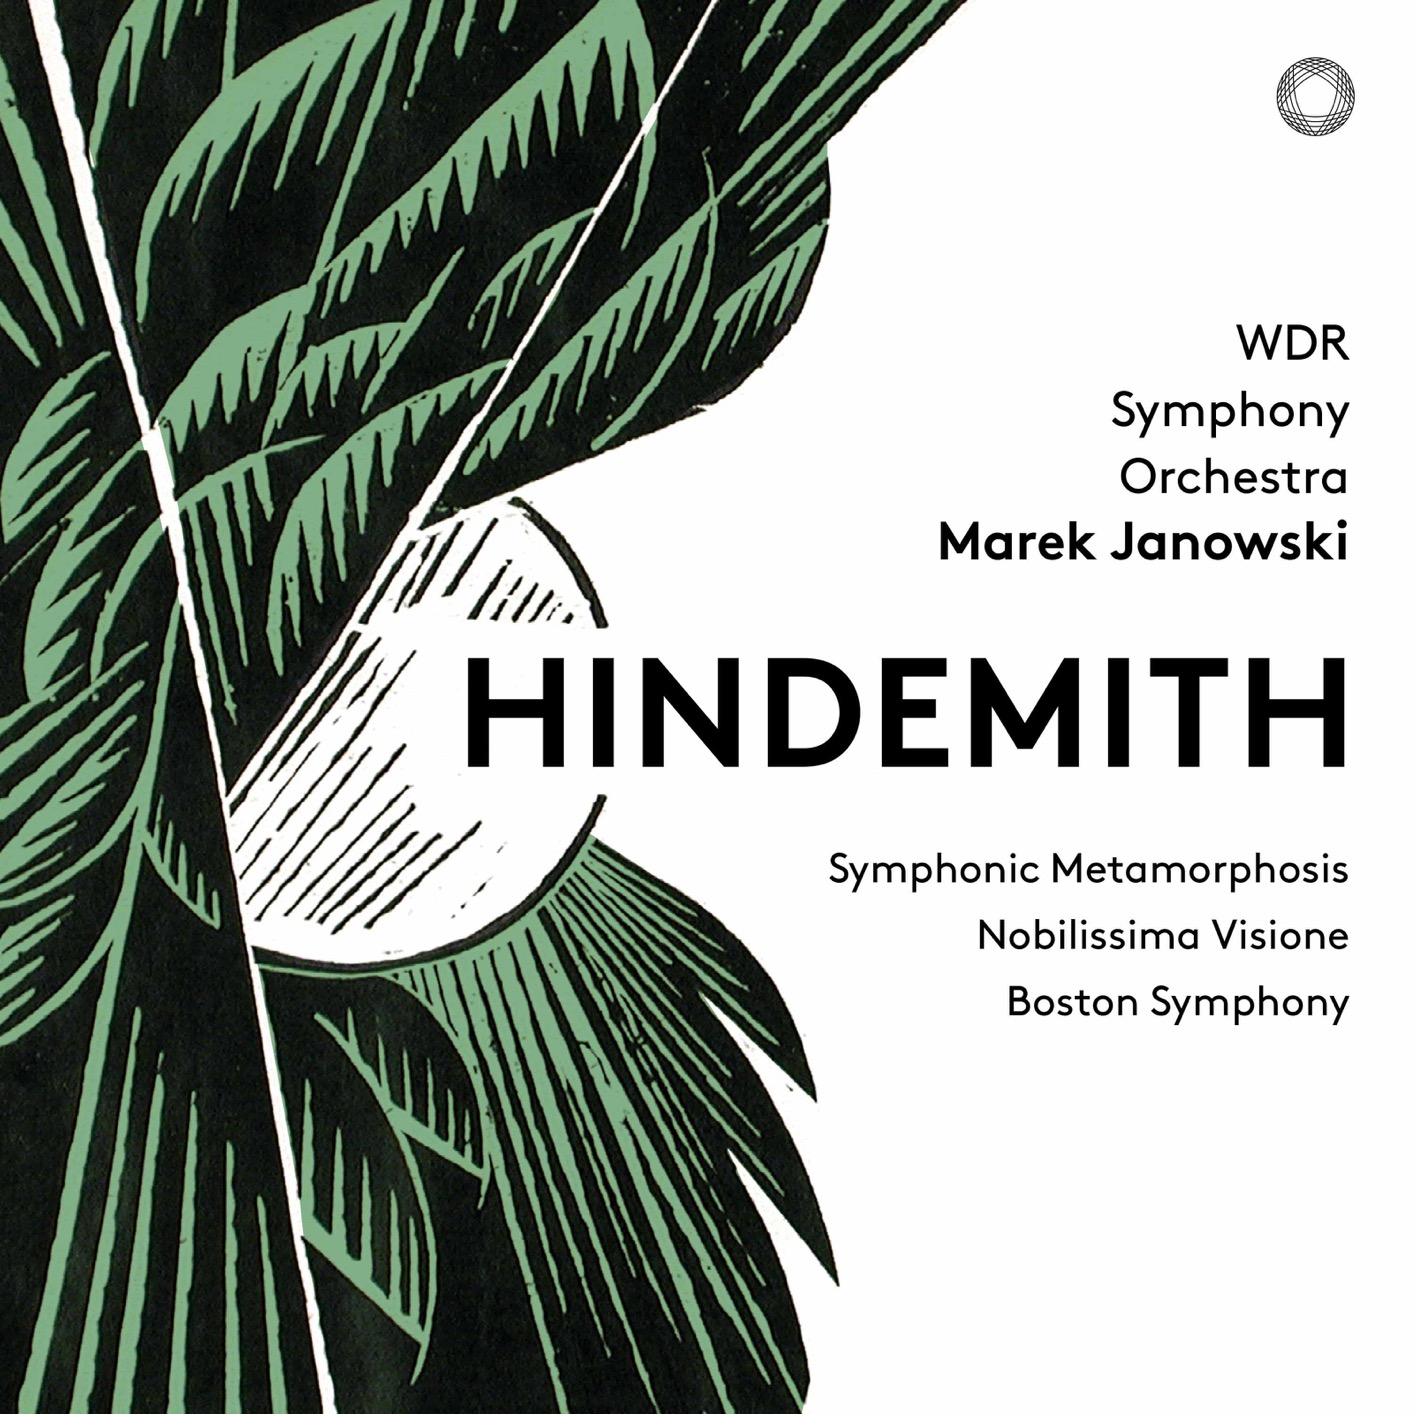 WDR Sinfonieorchester Kooln & Marek Janowski - Hindemith (2018) [FLAC 24bit/48kHz]